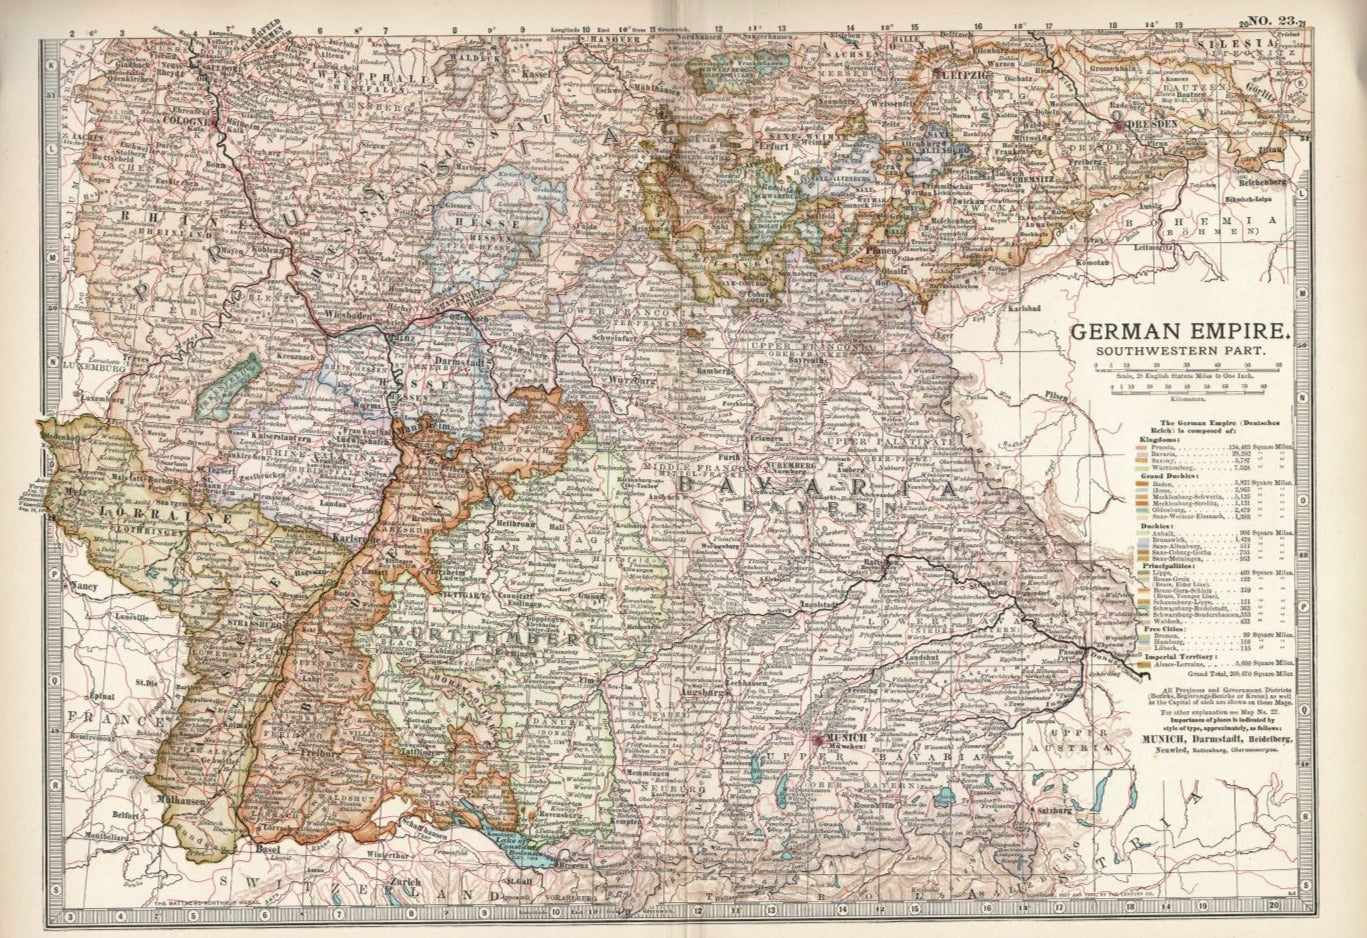 Southwestern German Empire antique map Encyclopaedia Britannica 1903